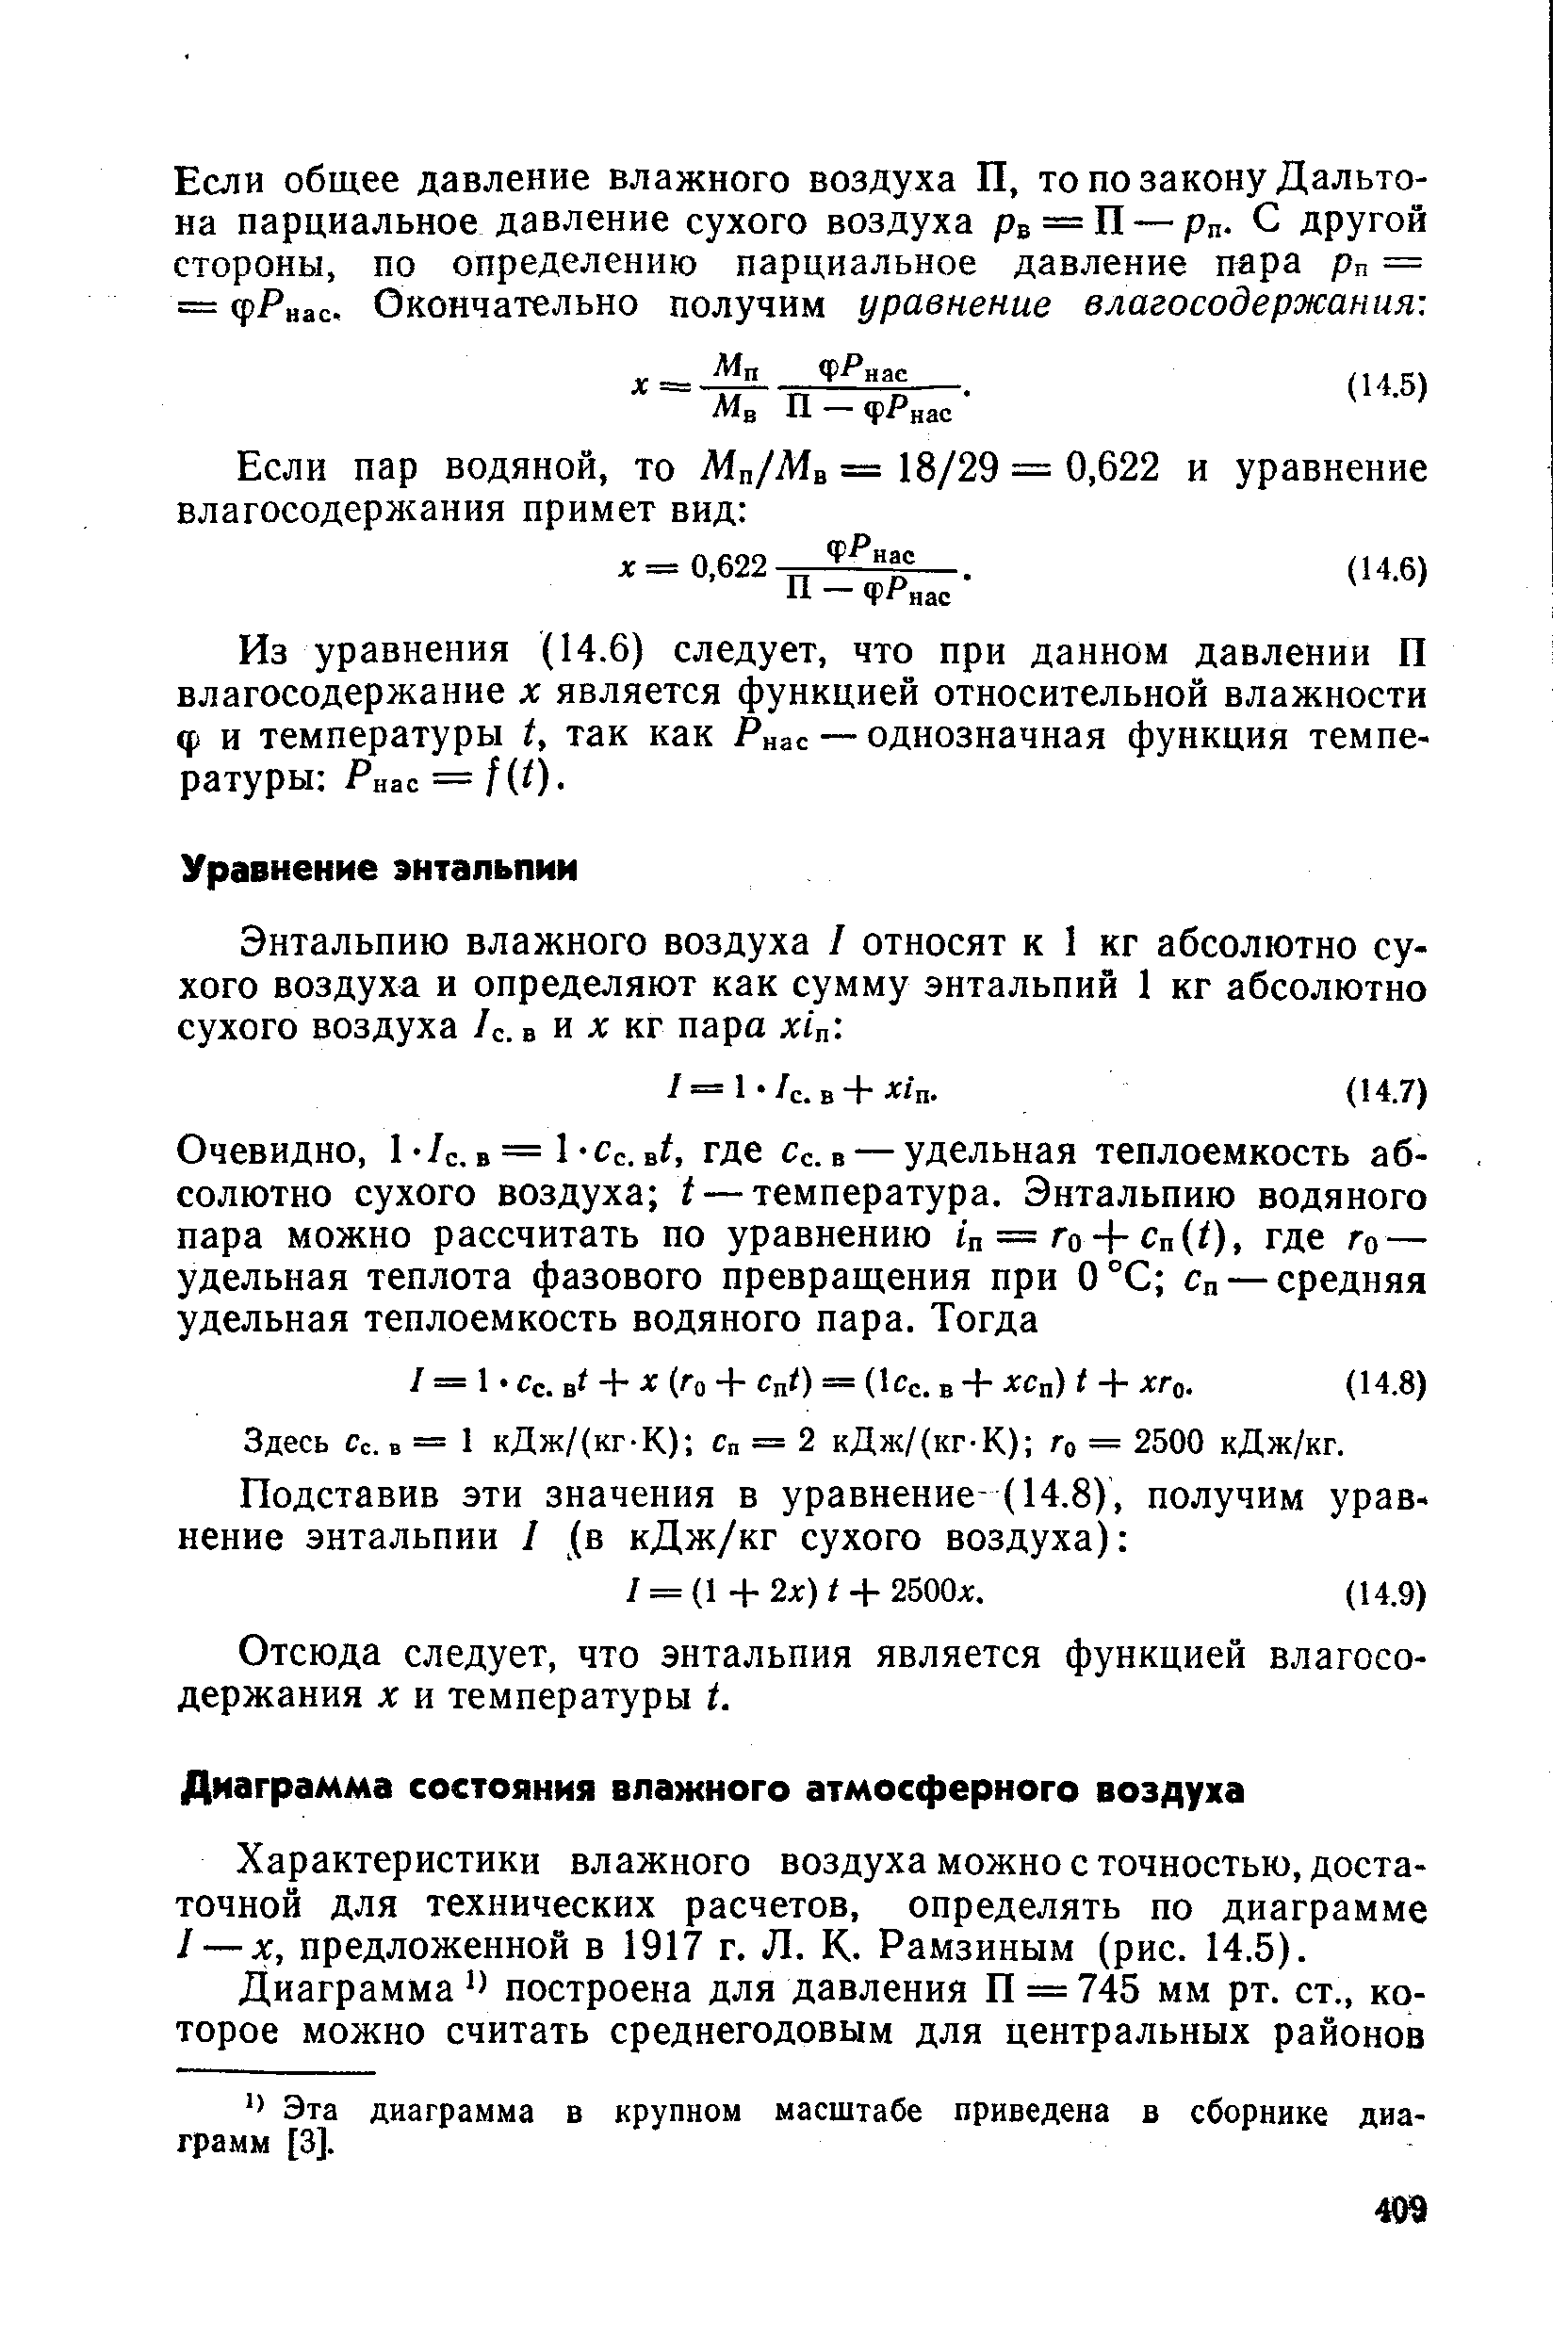 Характеристики влажного воздуха можно с точностью, достаточной для технических расчетов, определять по диаграмме 1 — х, предложенной в 1917 г. Л. К. Рамзиным (рис. 14.5).